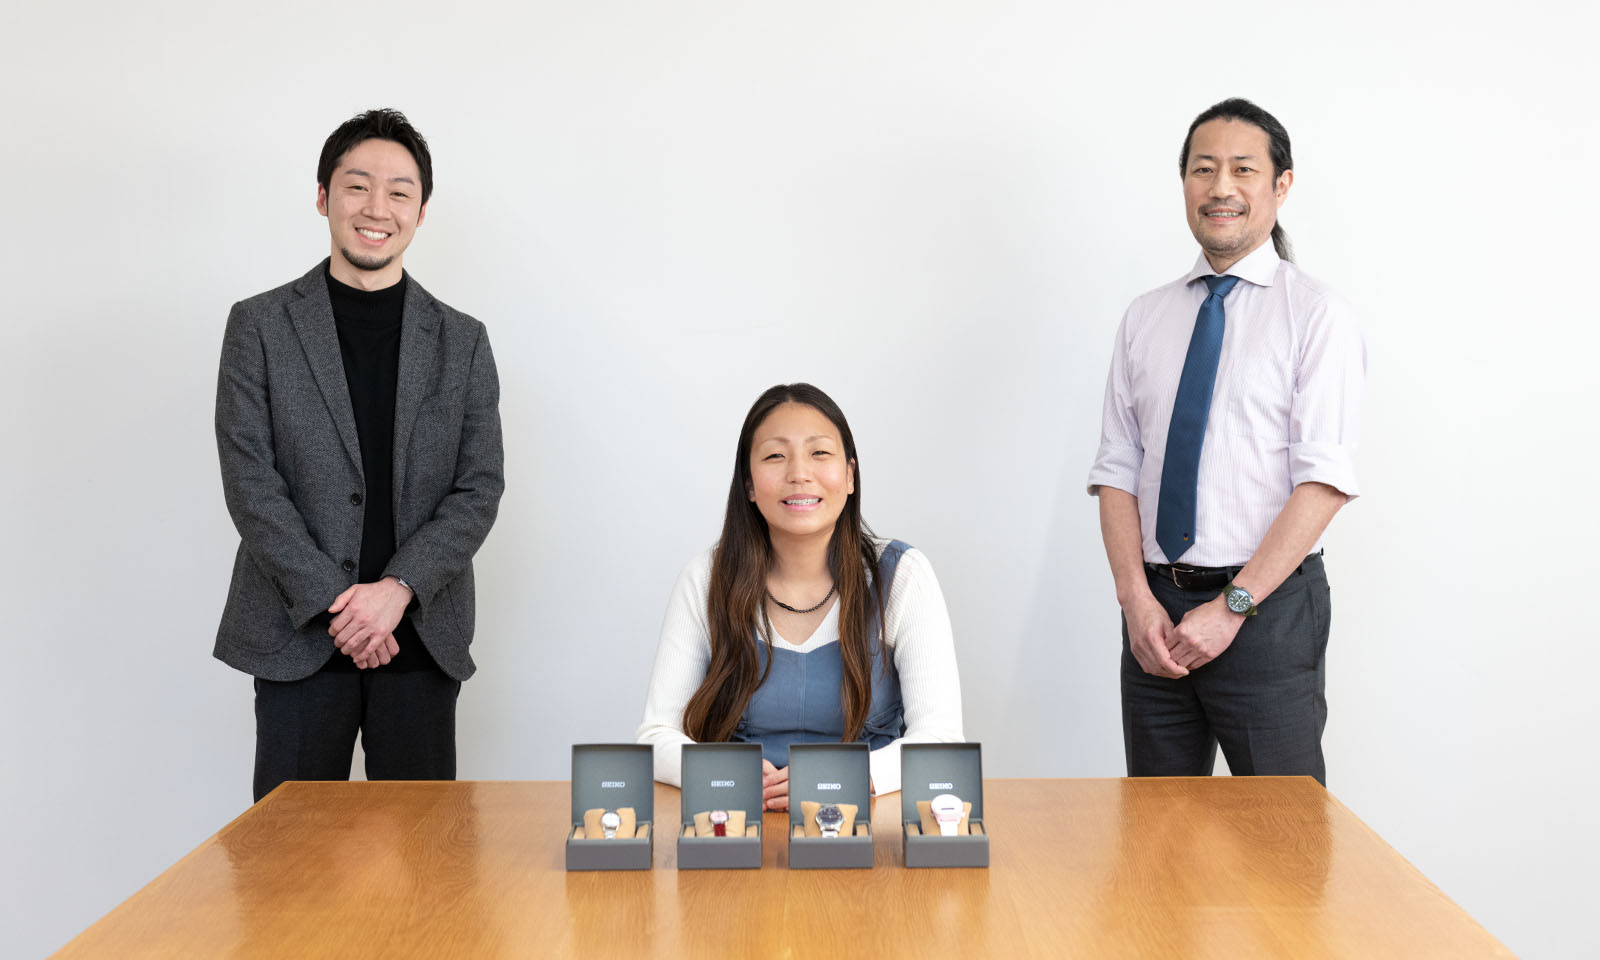 音声デジタルウオッチを担当した松榮氏（左）、障害者アスリートの高田さん（中央）、触読時計を担当した長谷川氏の3人が写った写真